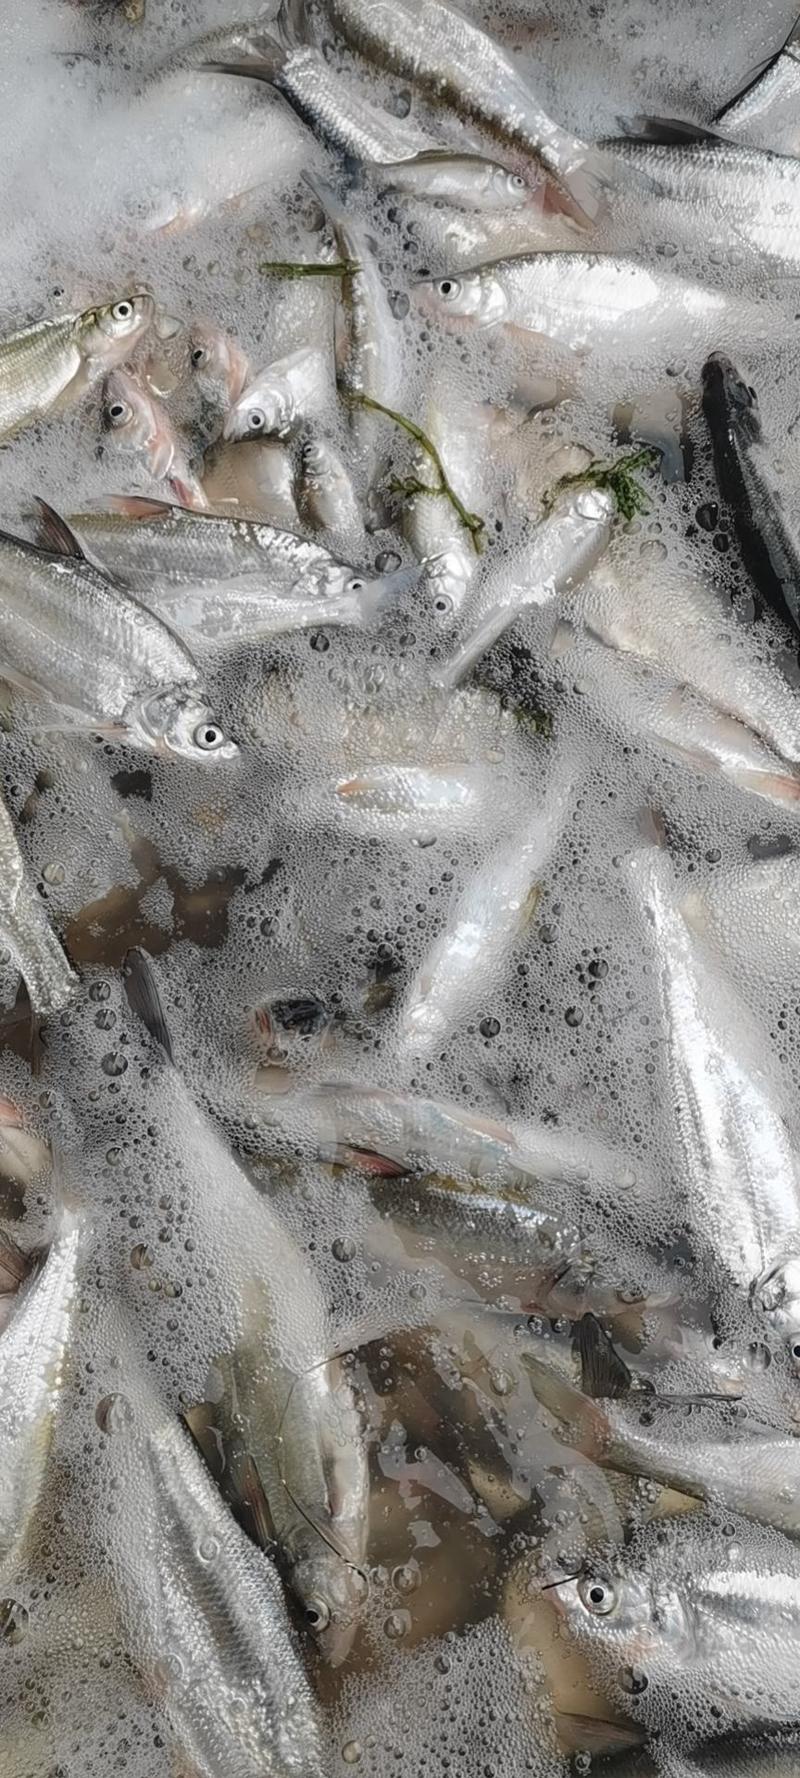 大期大量出售大型水库生态新鲜的白条鱼规格大小可以加工冷冻